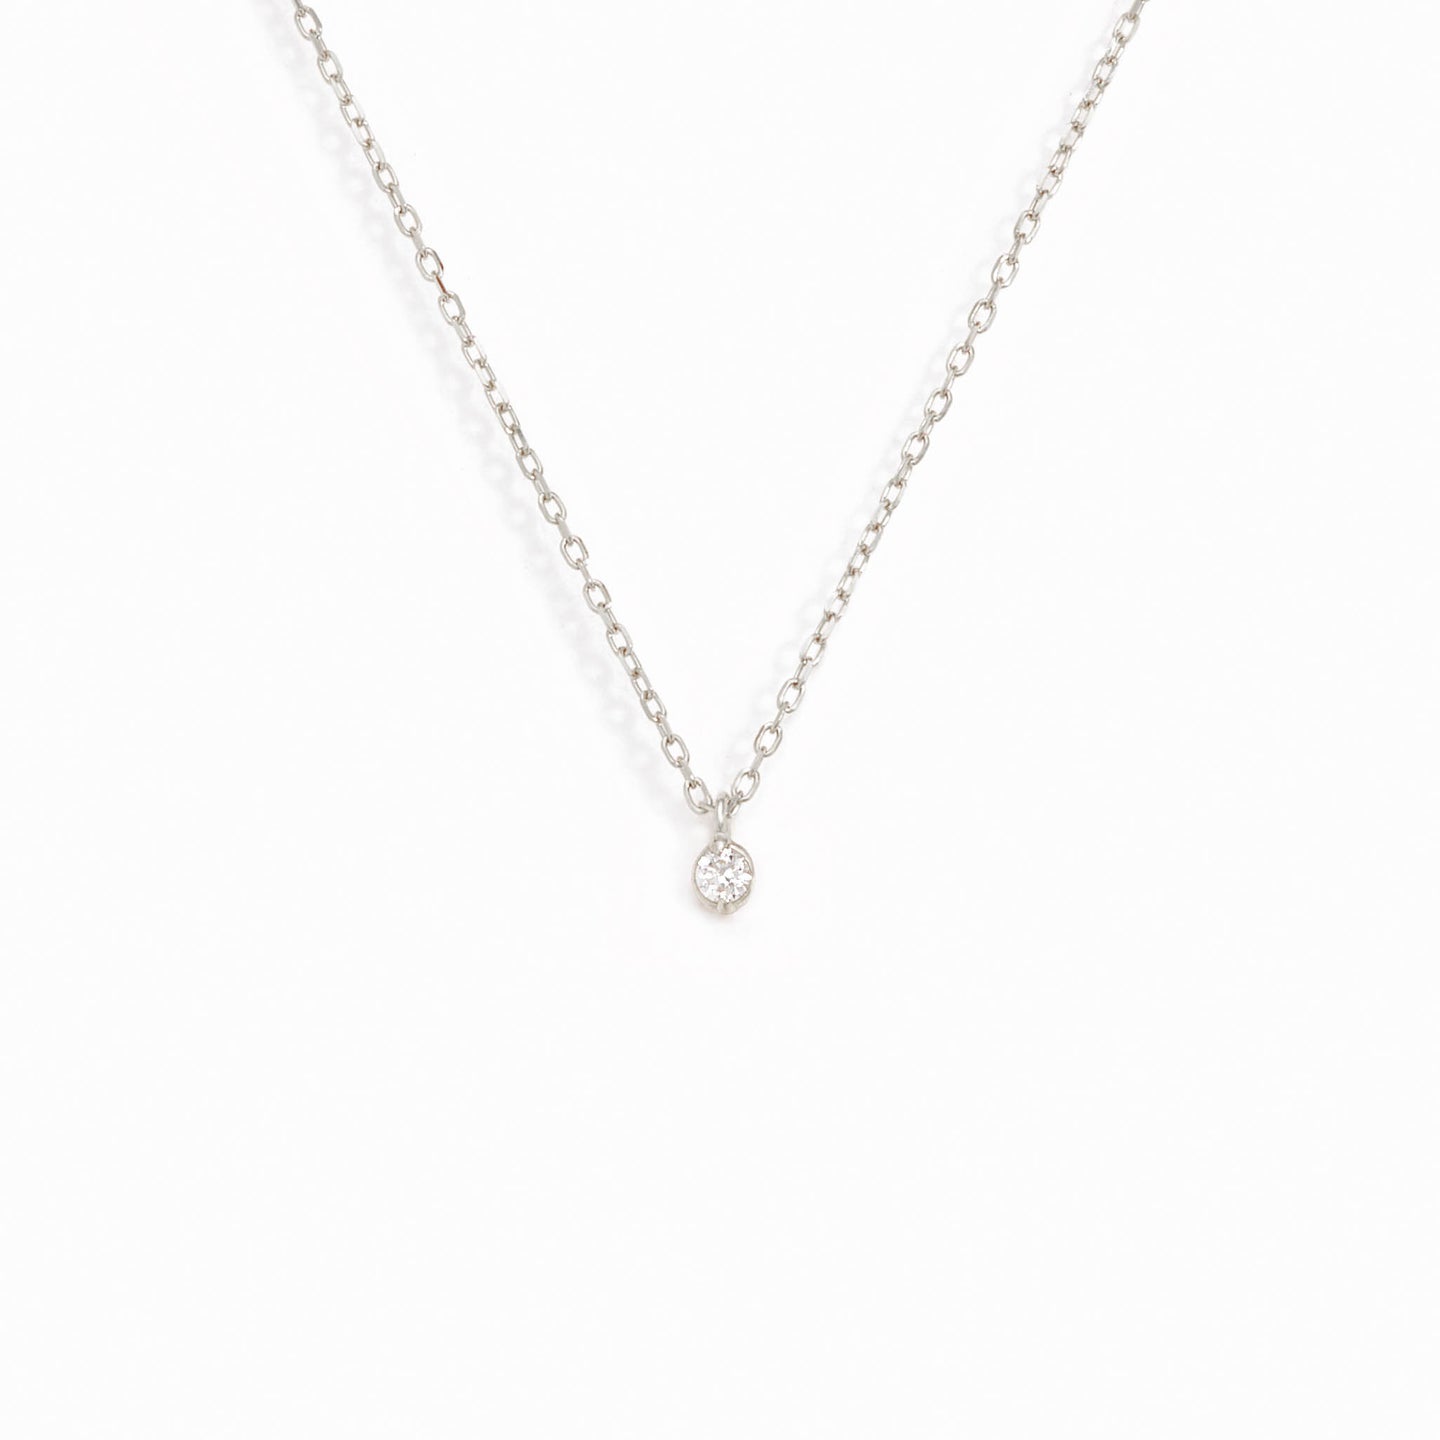 Diamond Pendant Necklace White Gold - Athena